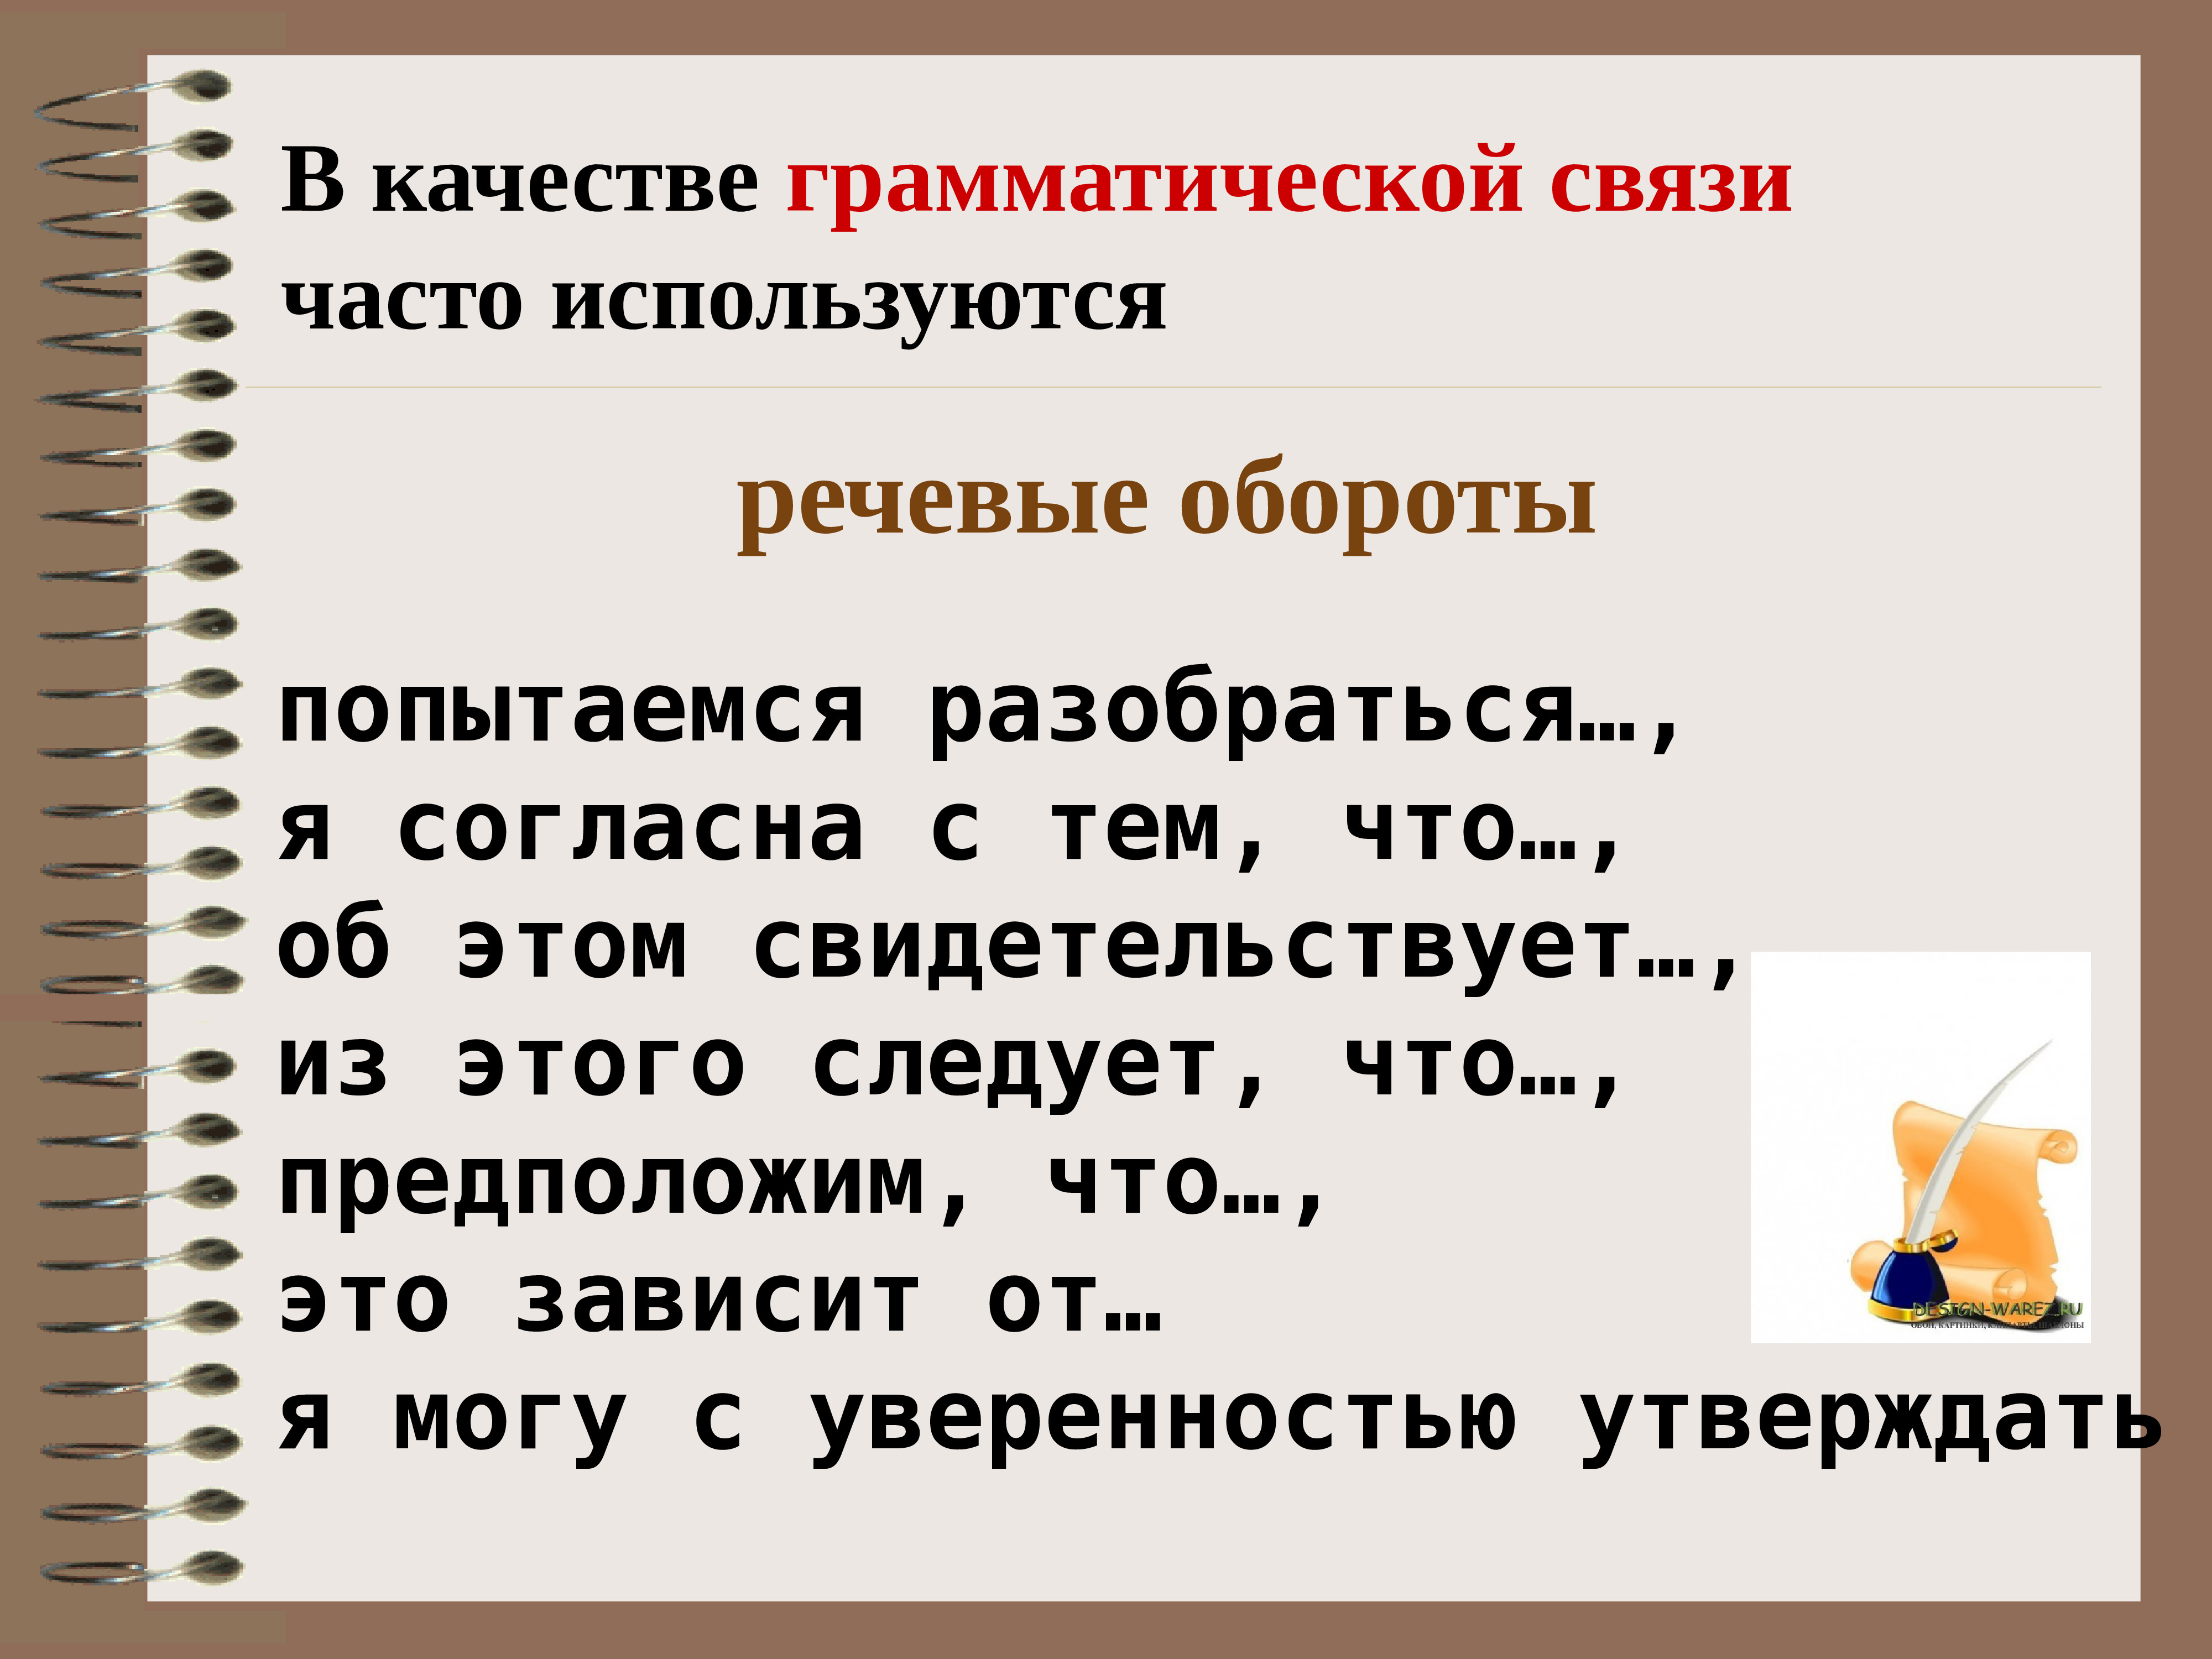 Пятнадцать как пишется правильно на русском языке